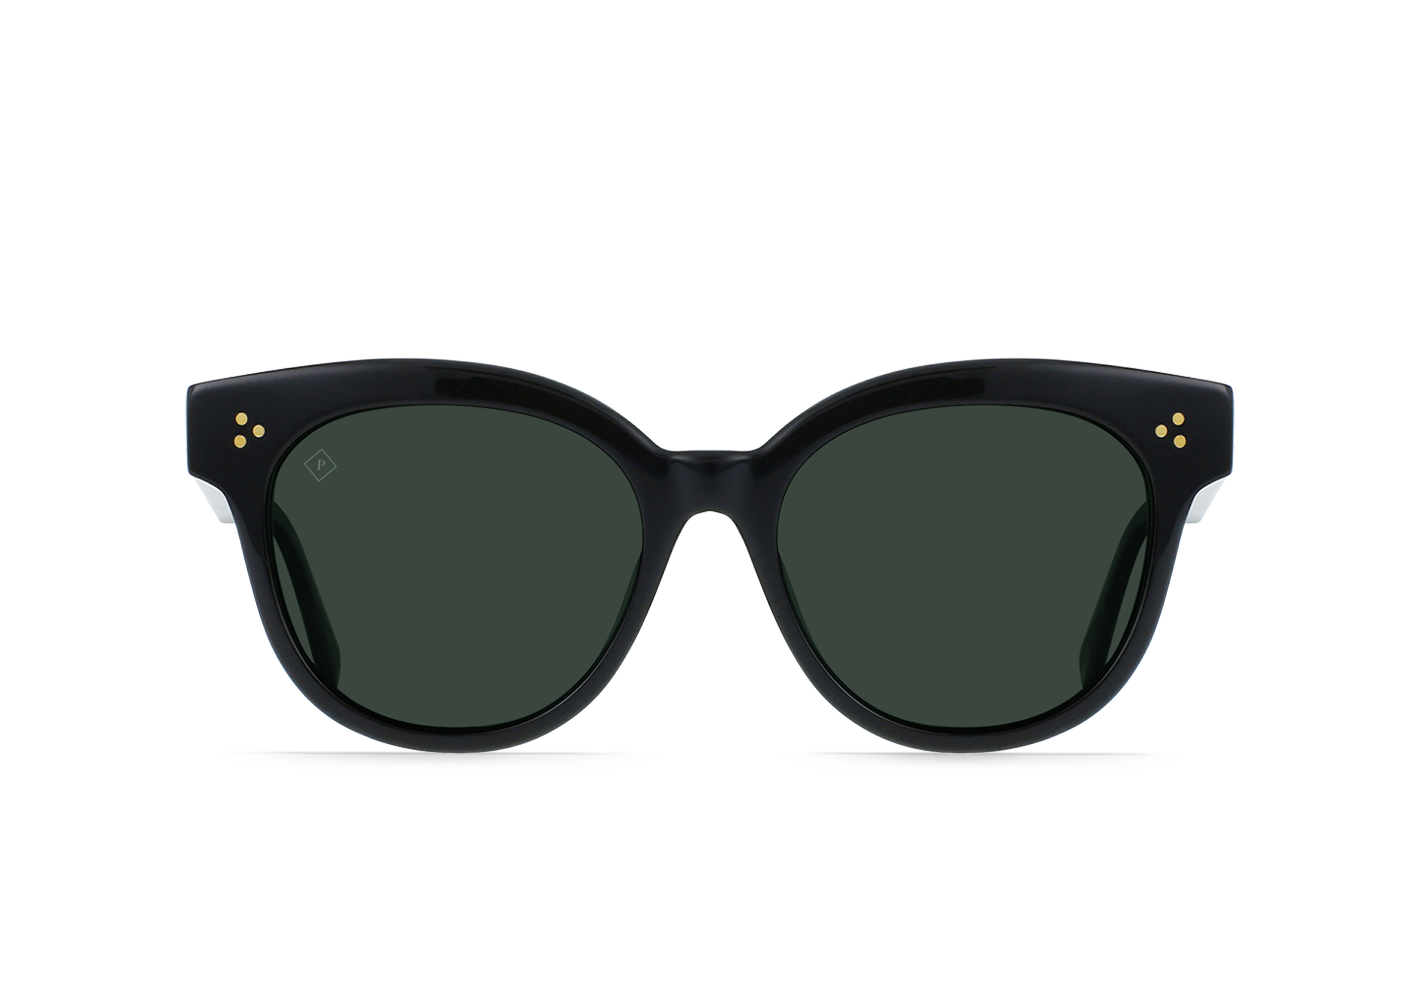 (取寄) レーン オプティクス ニコル ポーラライズド サングラス RAEN optics Nikol Polarized Sunglasses Crystal Black Green Polarized